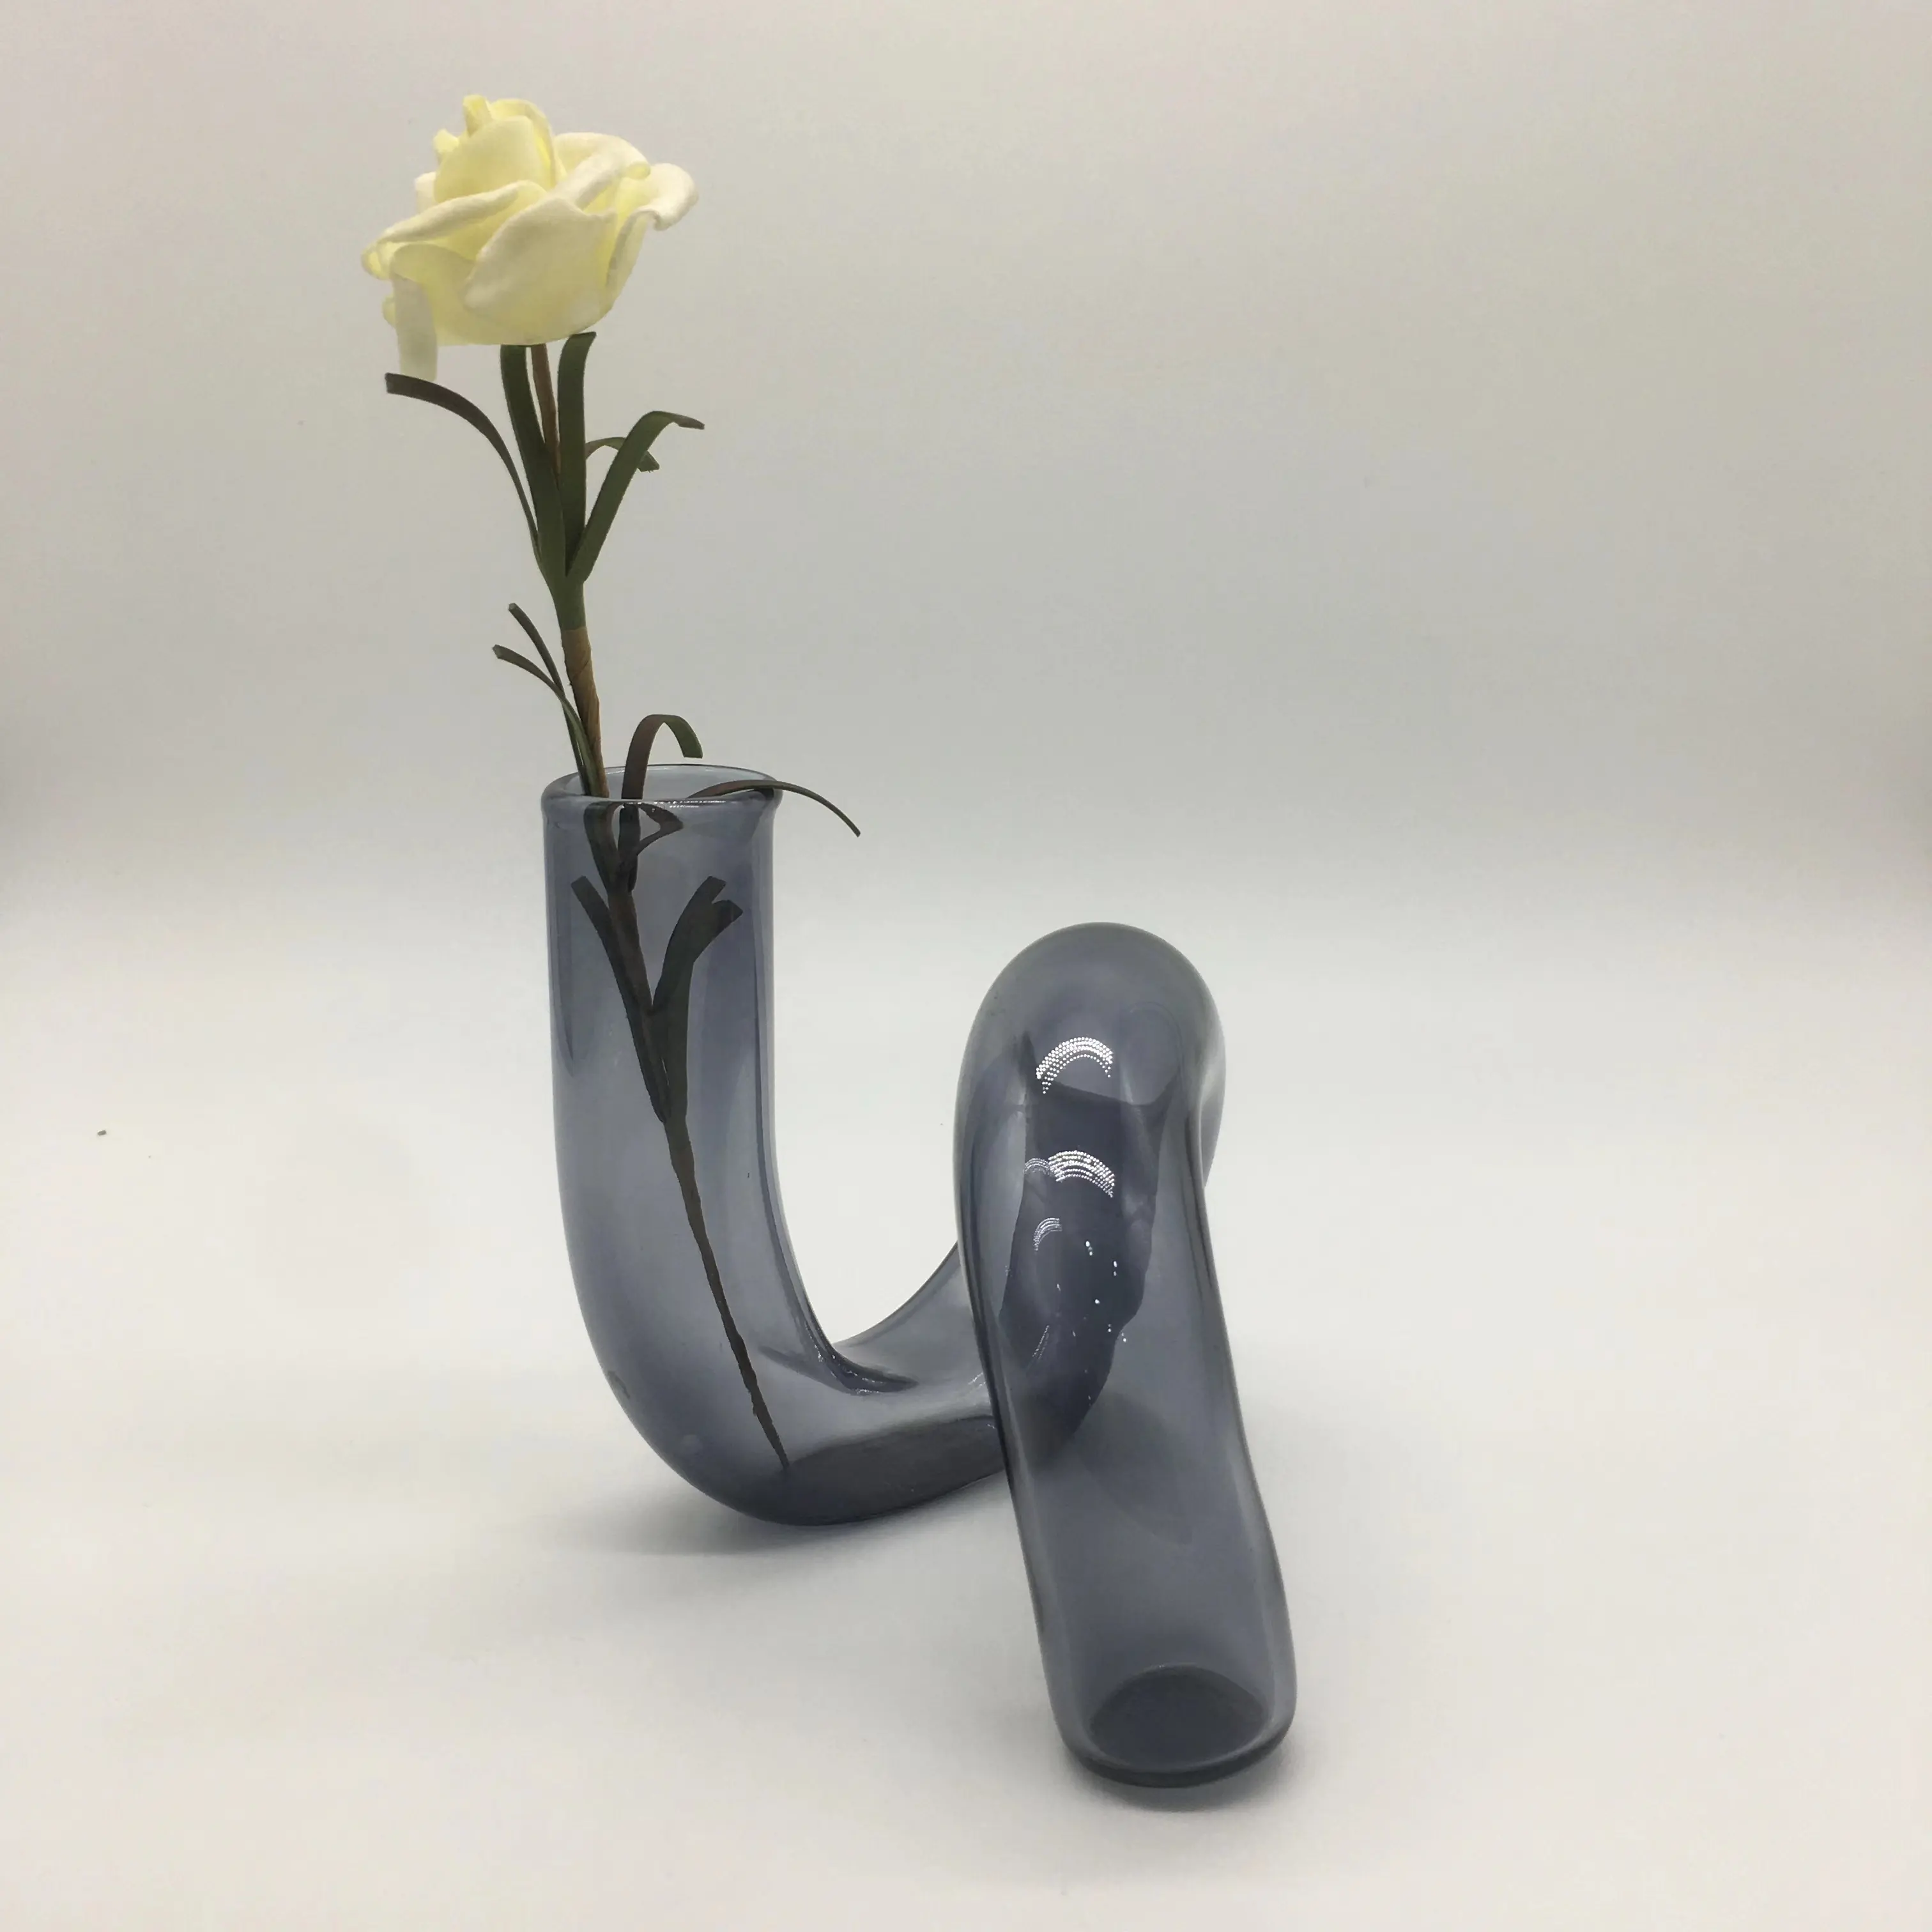 ロマンチックな家具革新的で創造的な耐熱ハンドカラー透明卓上ガラス花瓶湾曲した管状花瓶